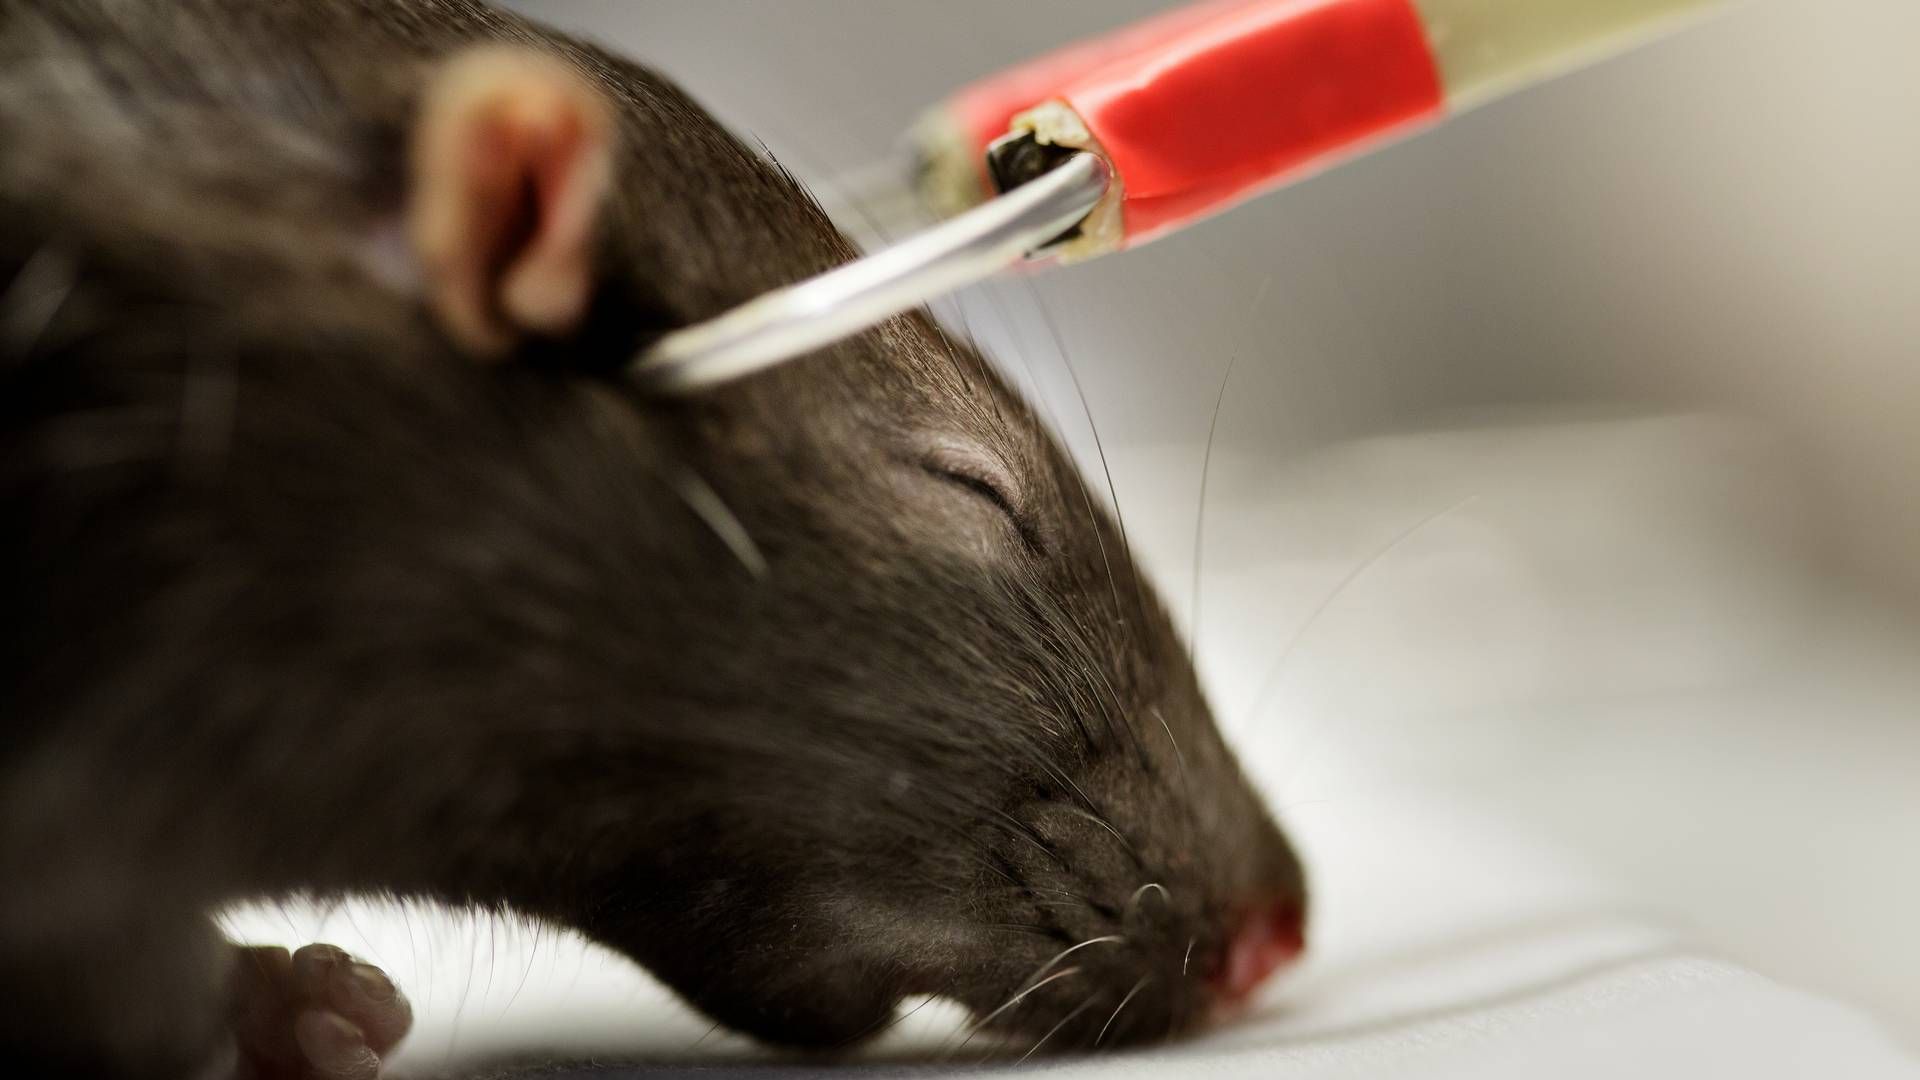 Forsøg med rotte på Bispebjerg Hospital, elektrochok og udgravning af hjerne. | Foto: Lasse Kofod